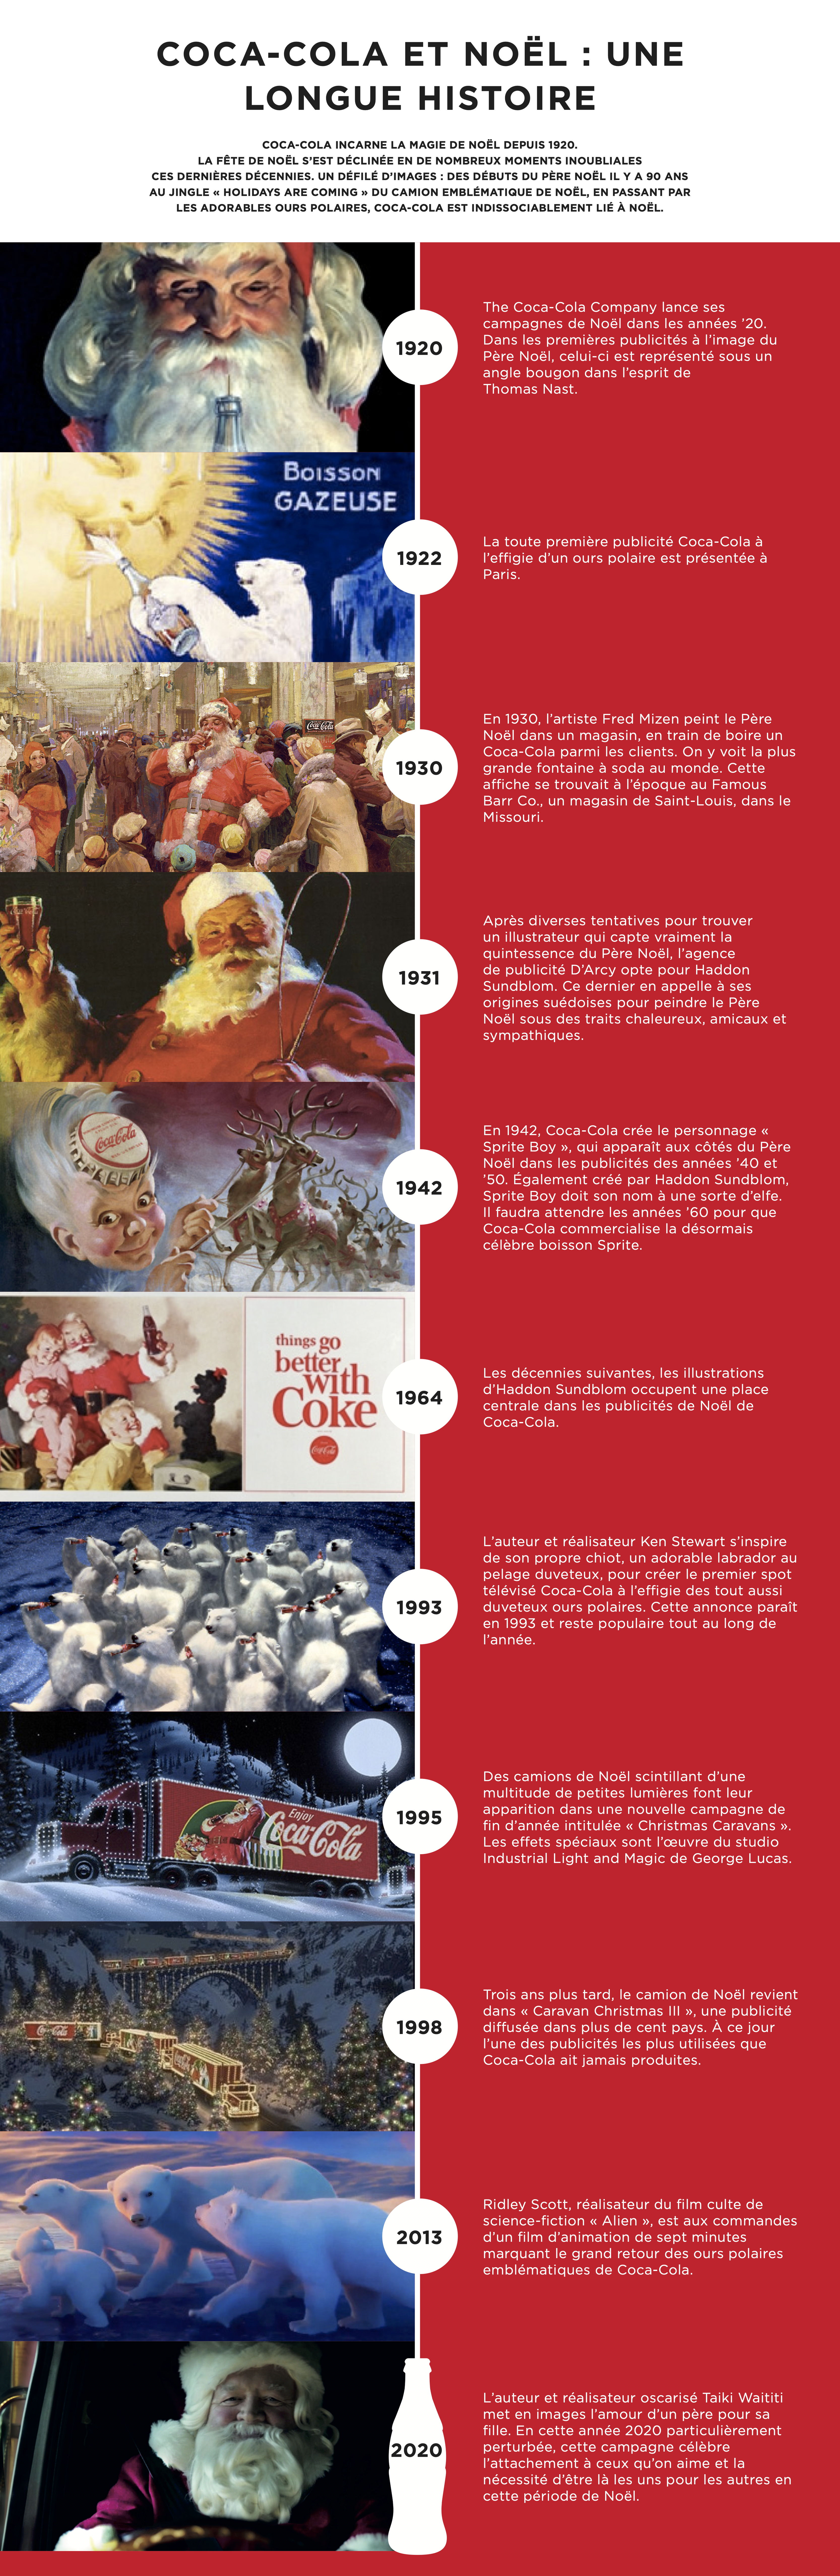 Coca-Cola et Noël